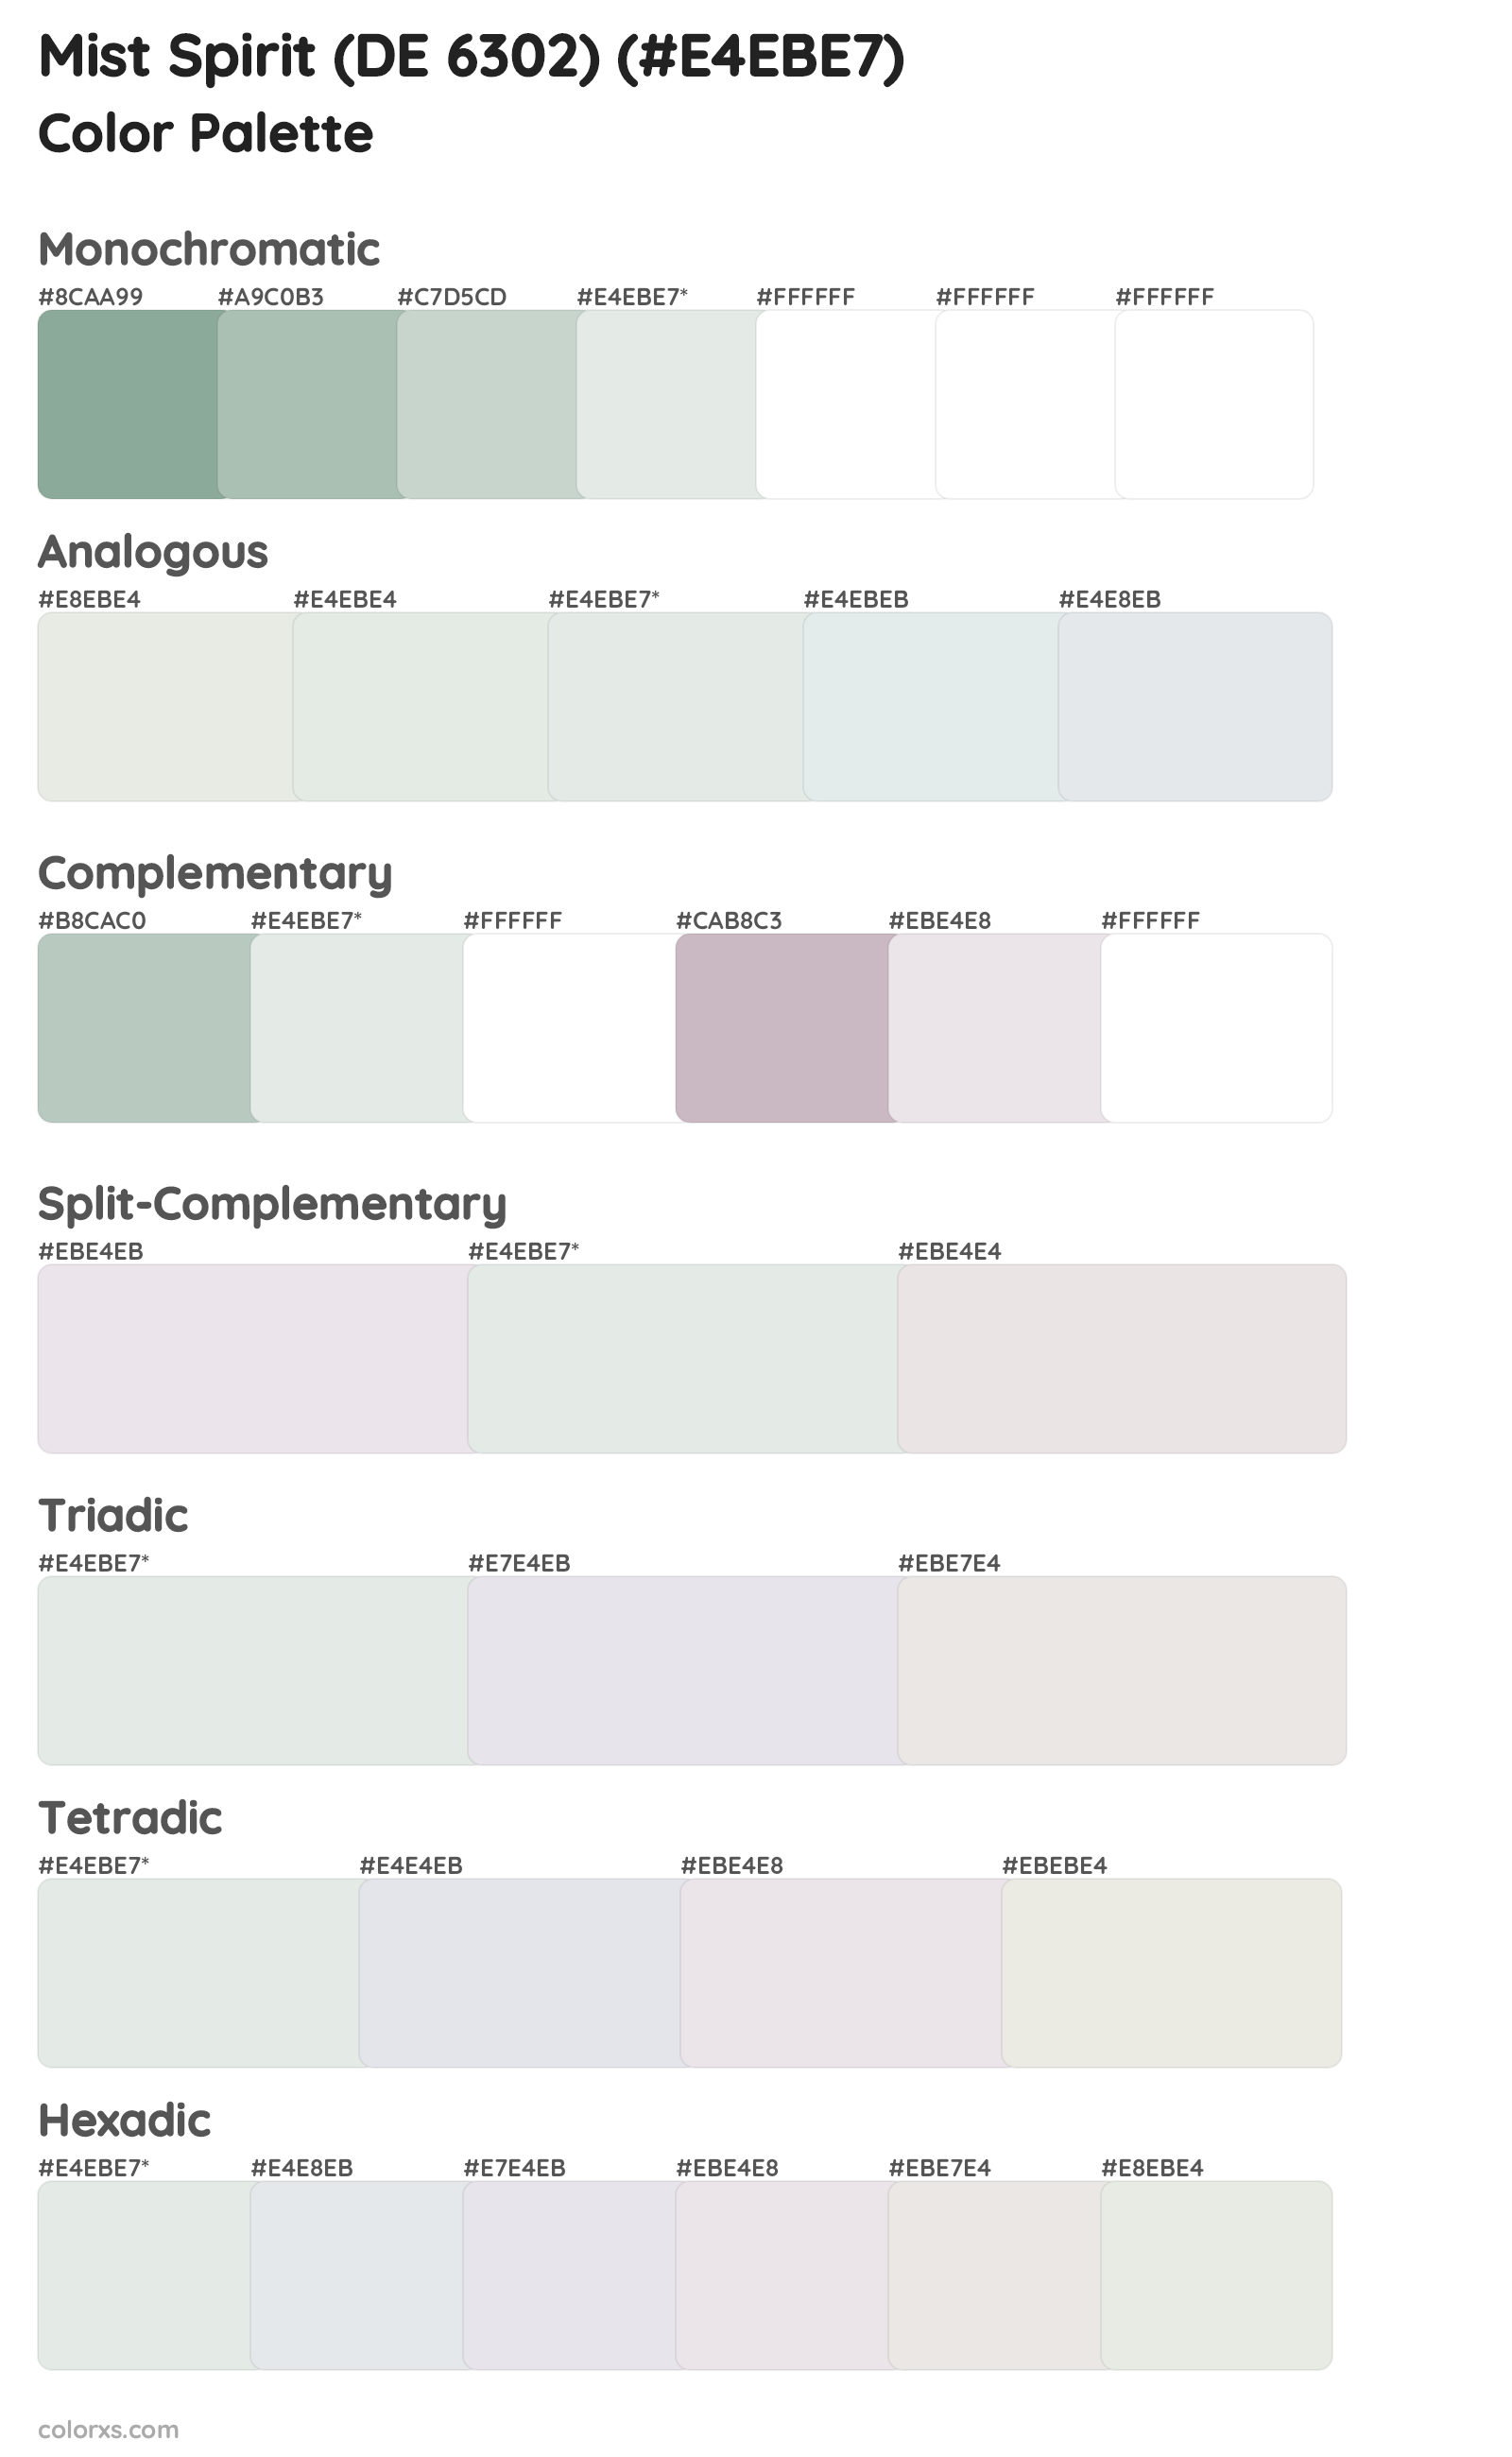 Mist Spirit (DE 6302) Color Scheme Palettes